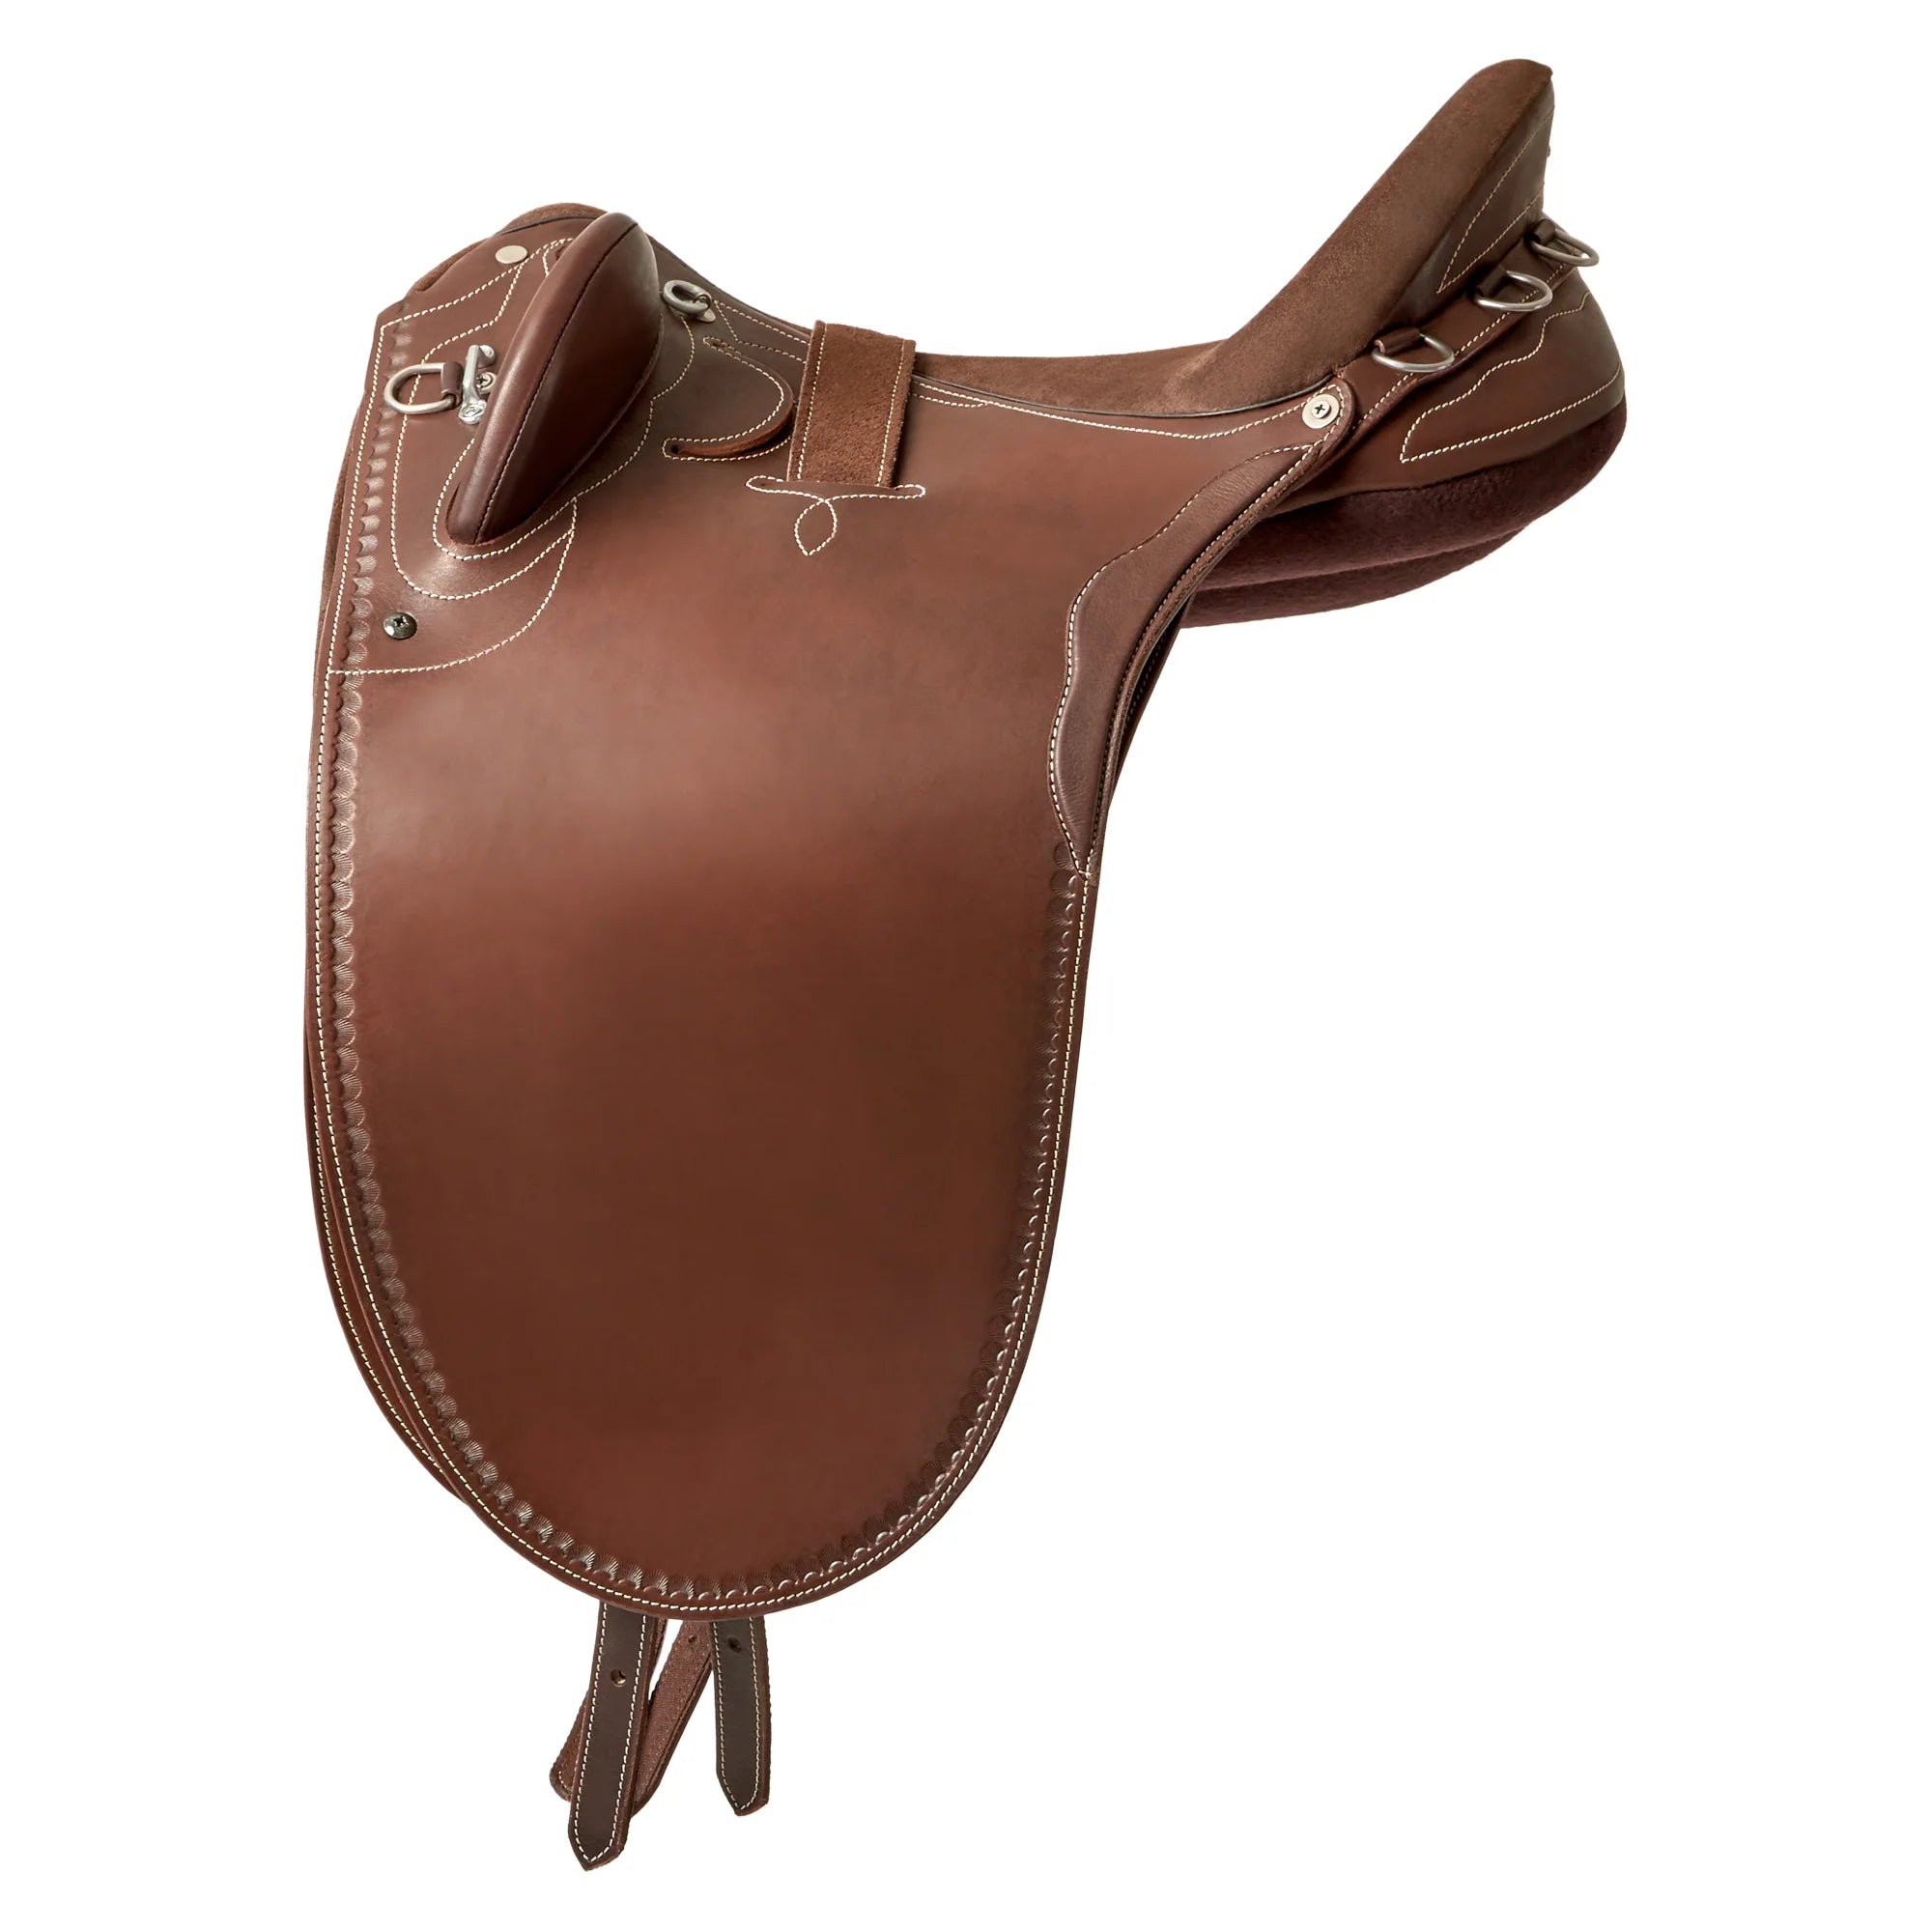 Syd Hill Premium Leather Adjustable Tree Stock Saddle